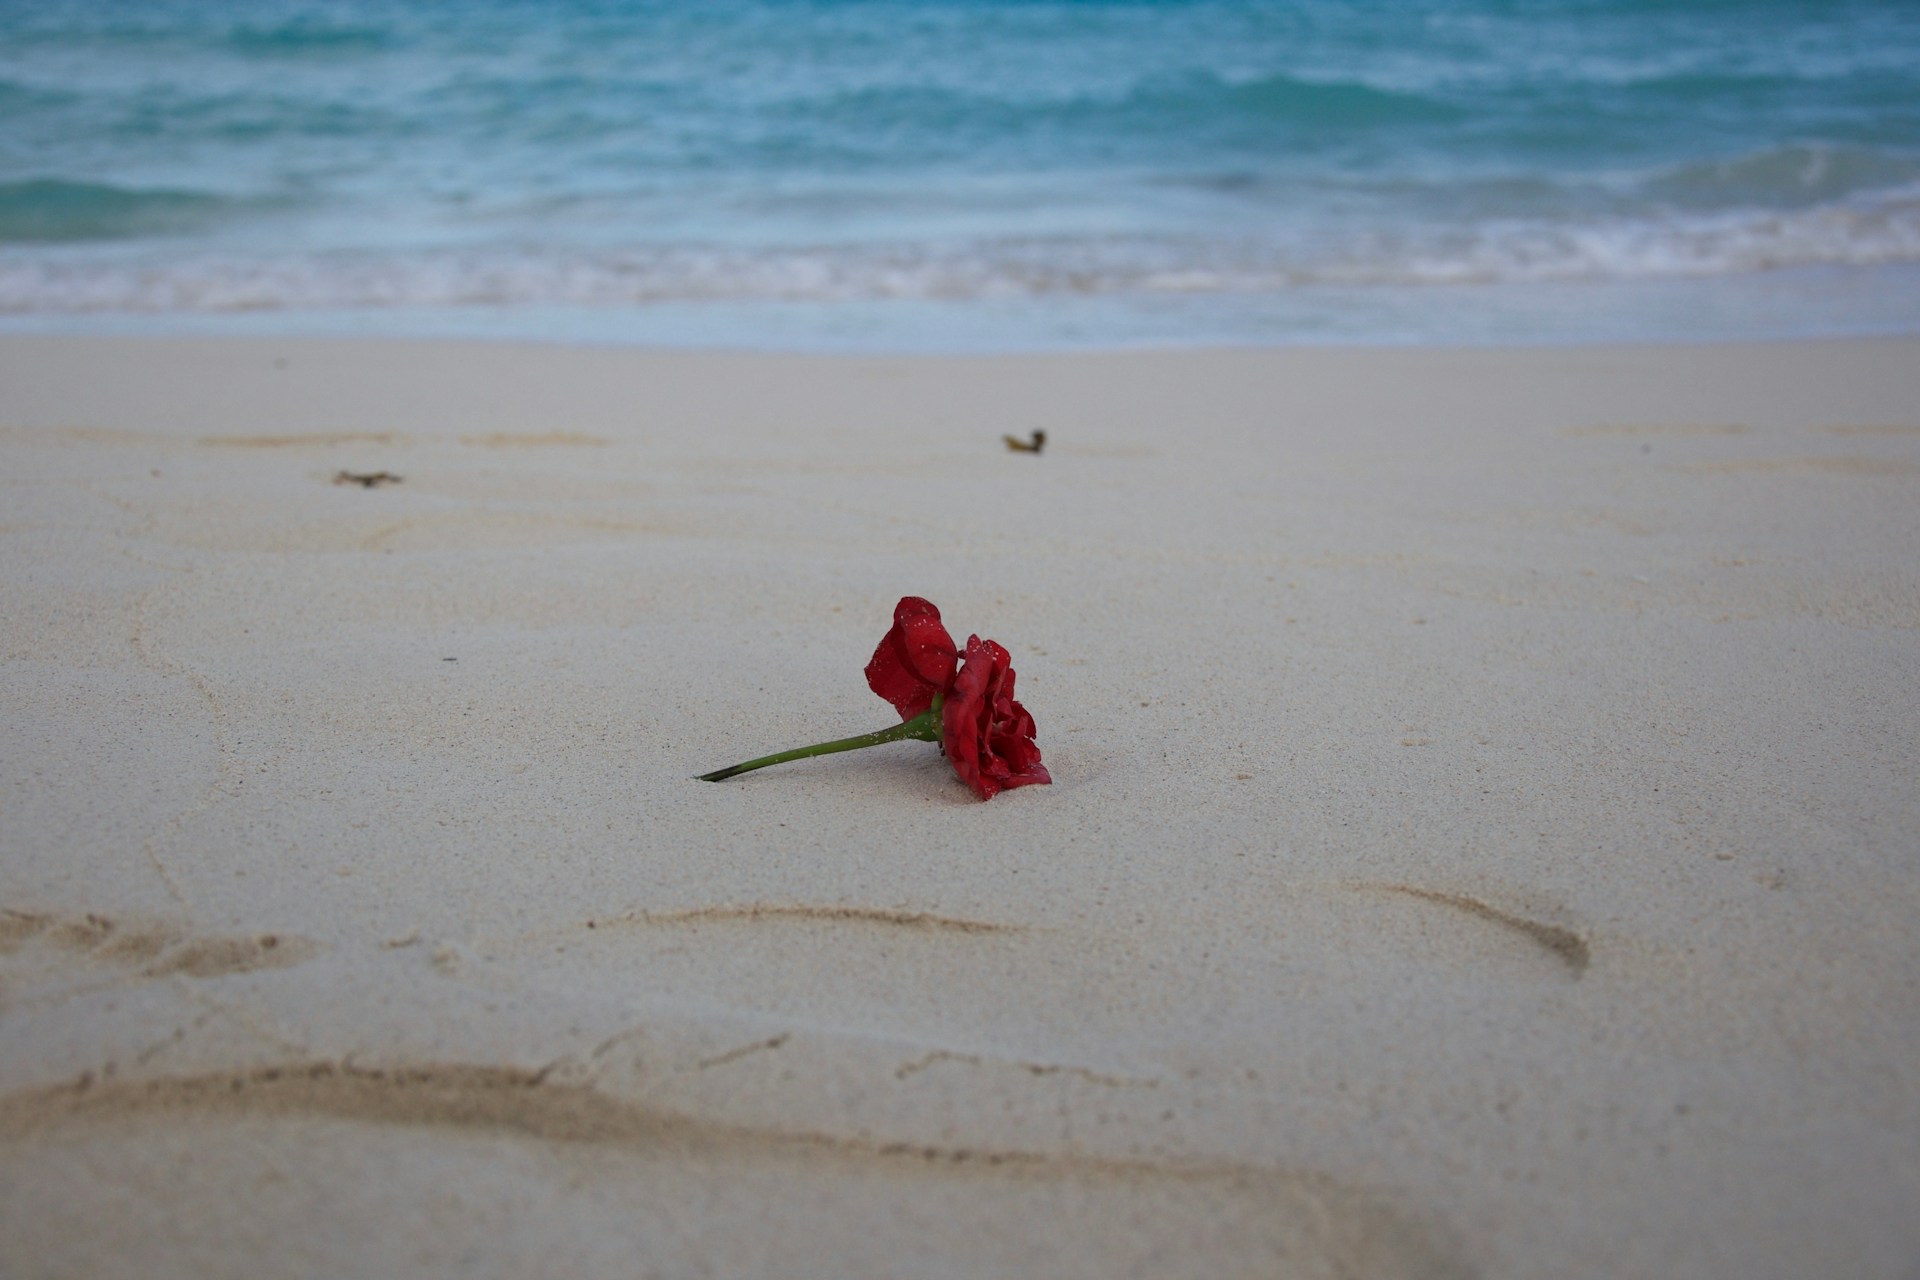 red-petaled flower on sand near shore